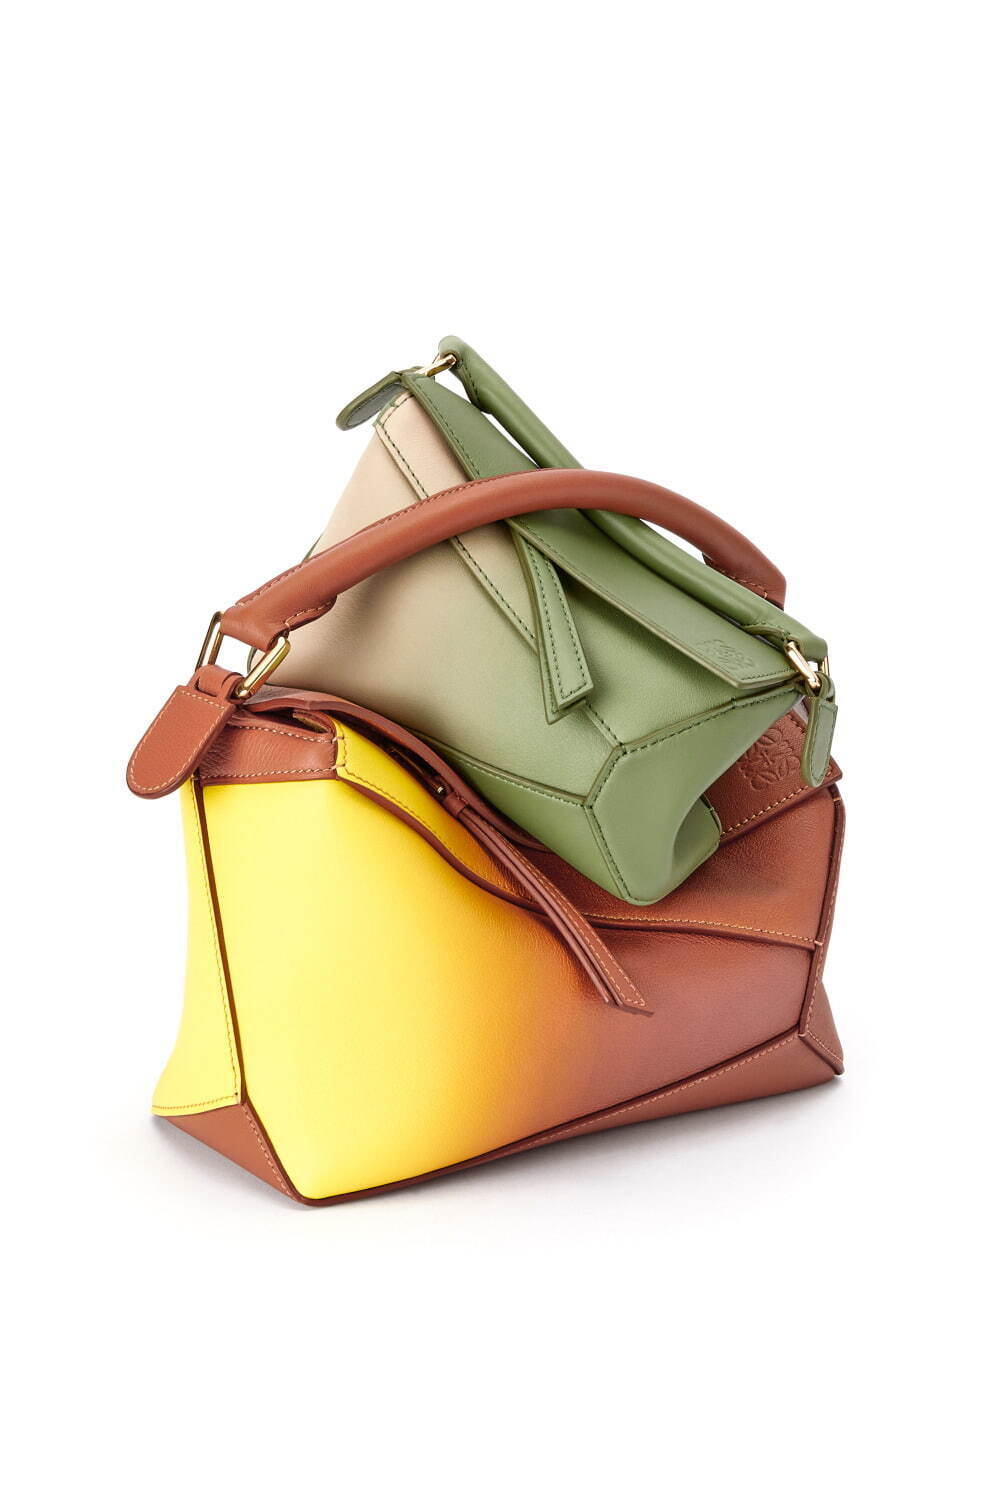 人気ブランド「レディースバッグ」おしゃれな革製カジュアルバッグ